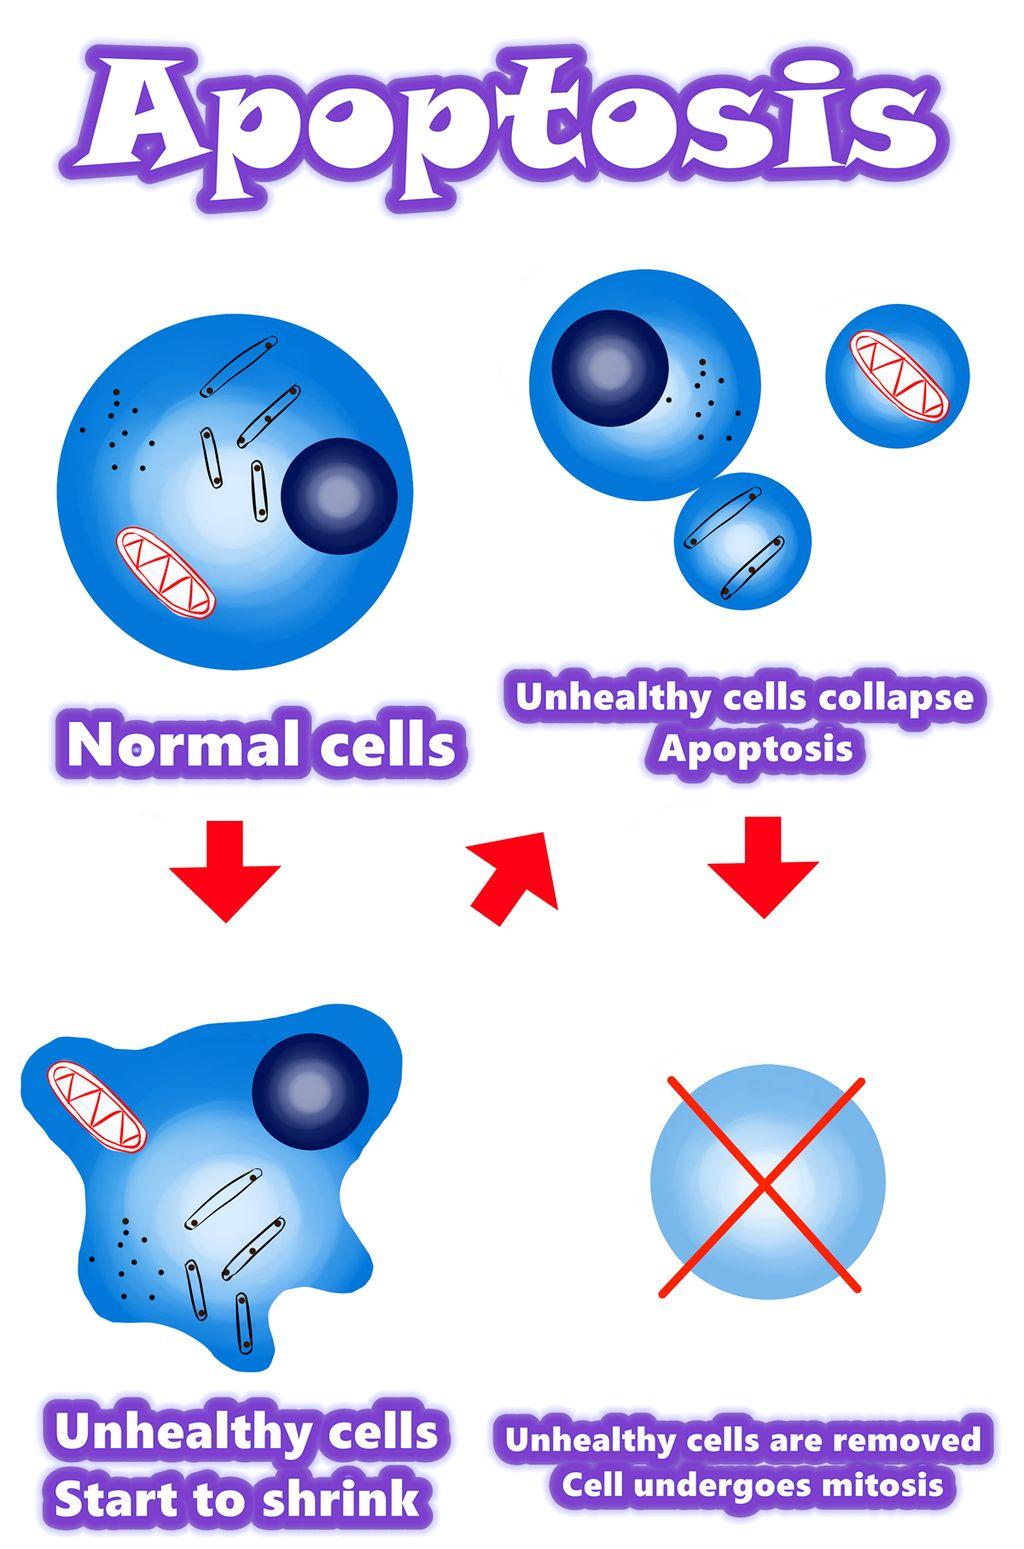 Solamargine | Најбоље решење за ћелије рака 2021. године Апоптоза вс ћелије рака | Апоптоза вс абнормалне ћелије | Апоптоза вс мутиране ћелије | Преглед / Резиме / Механизам апоптозе